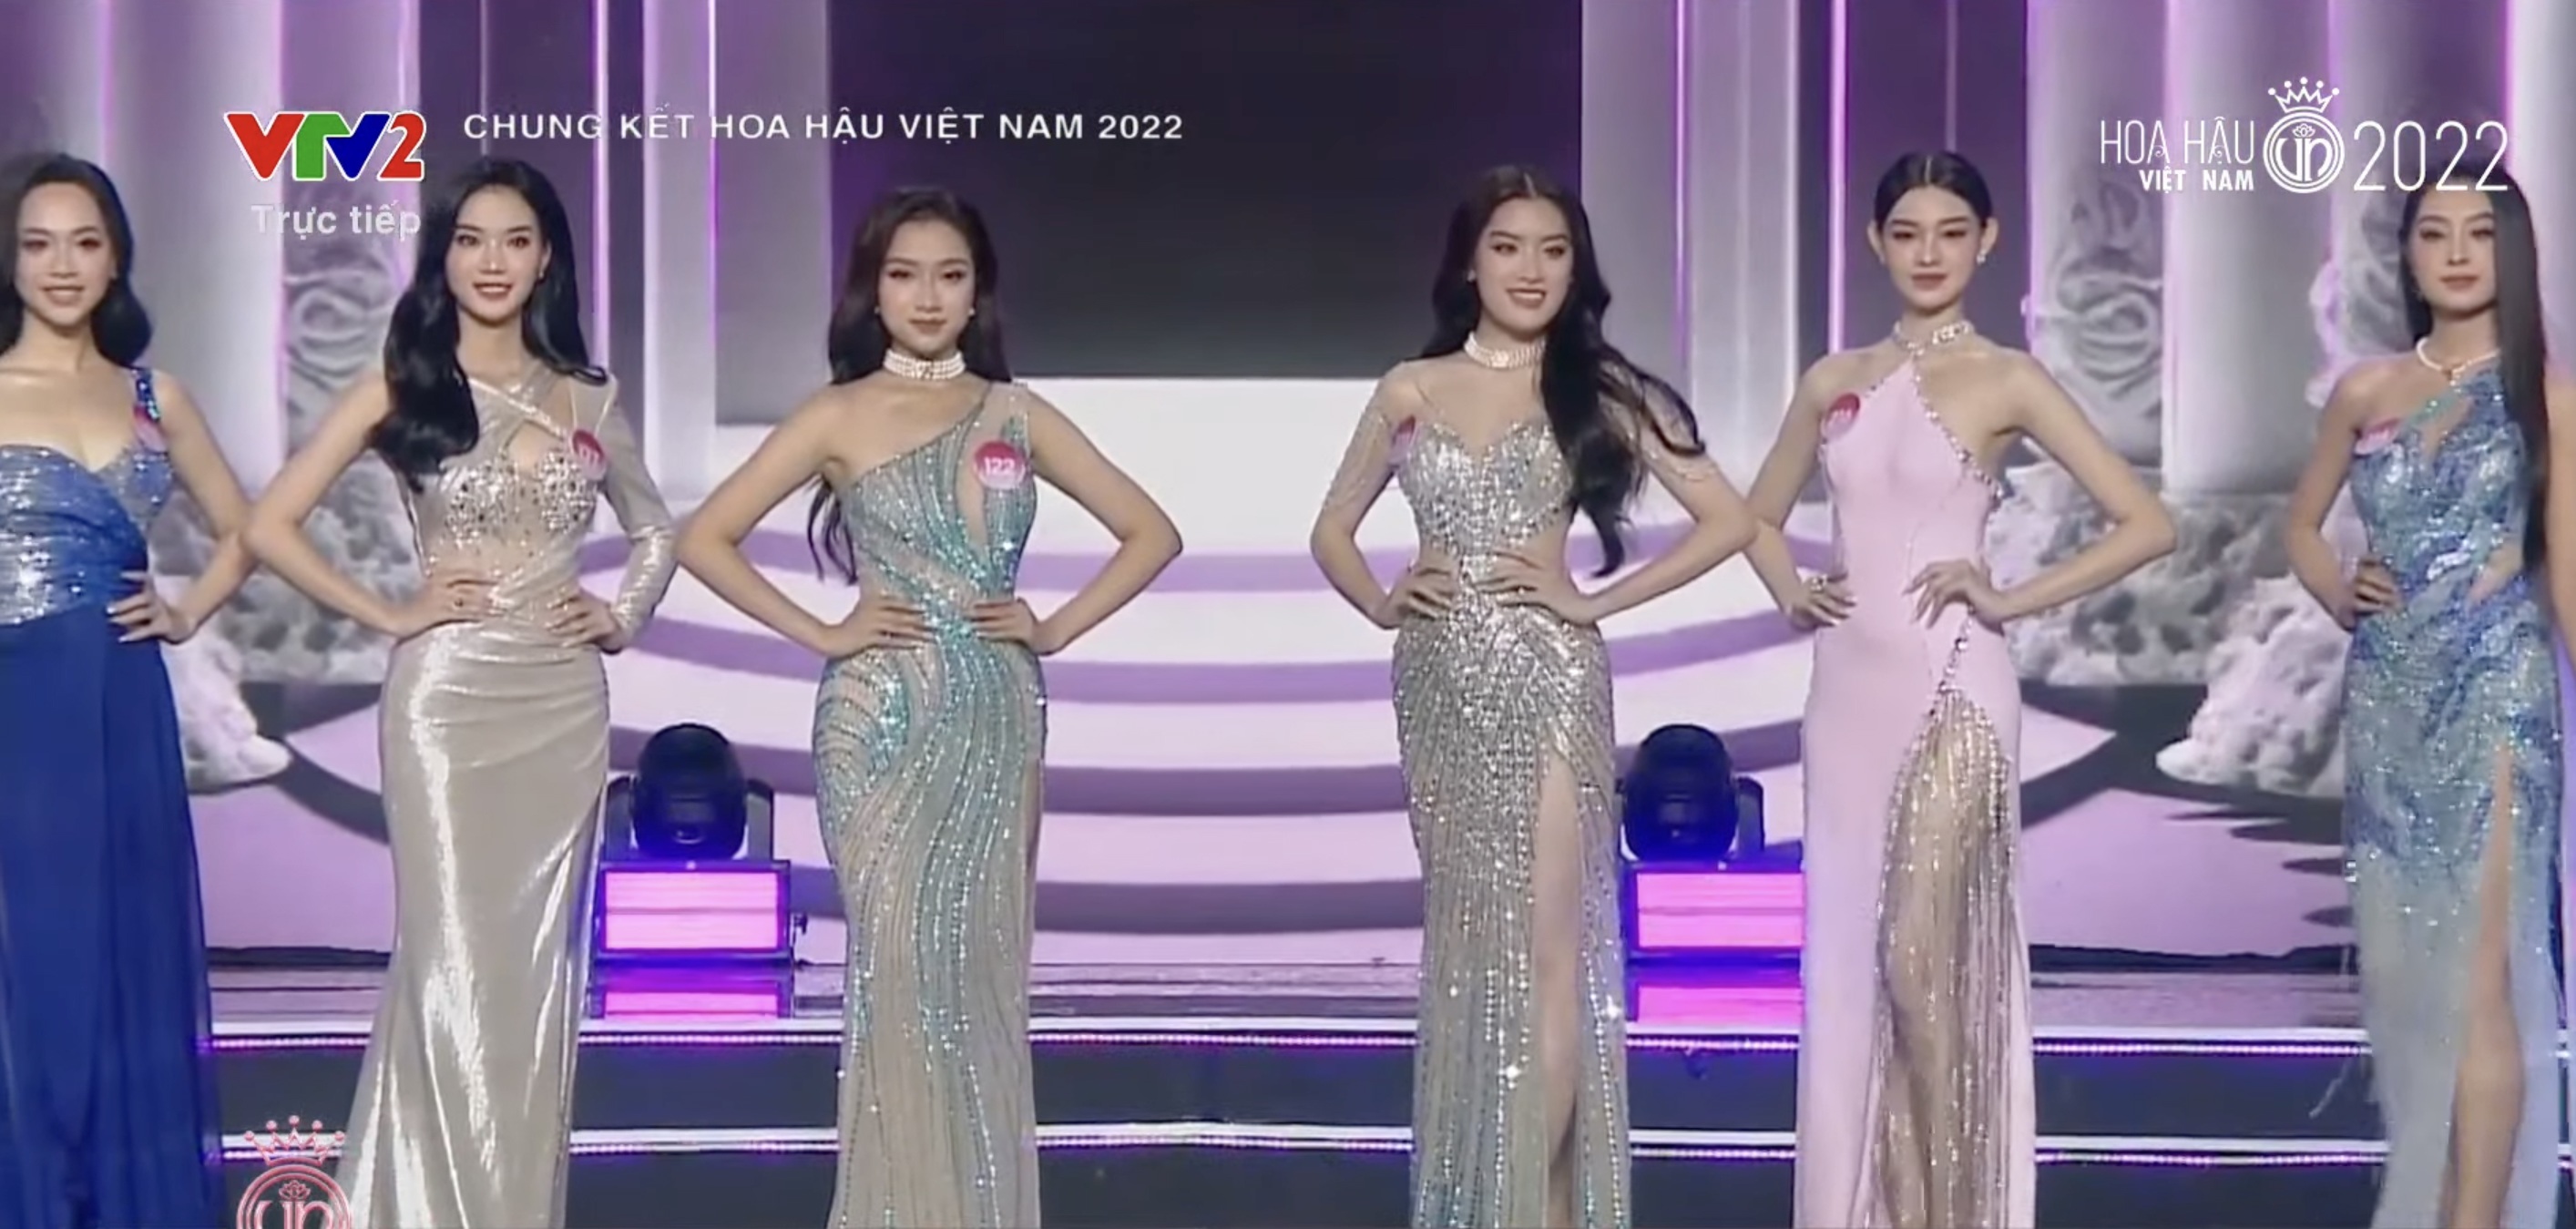 Chung kết Hoa hậu Việt Nam 2022: Tân Hoa hậu chính thức gọi tên Huỳnh Thị Thanh Thuỷ - 22